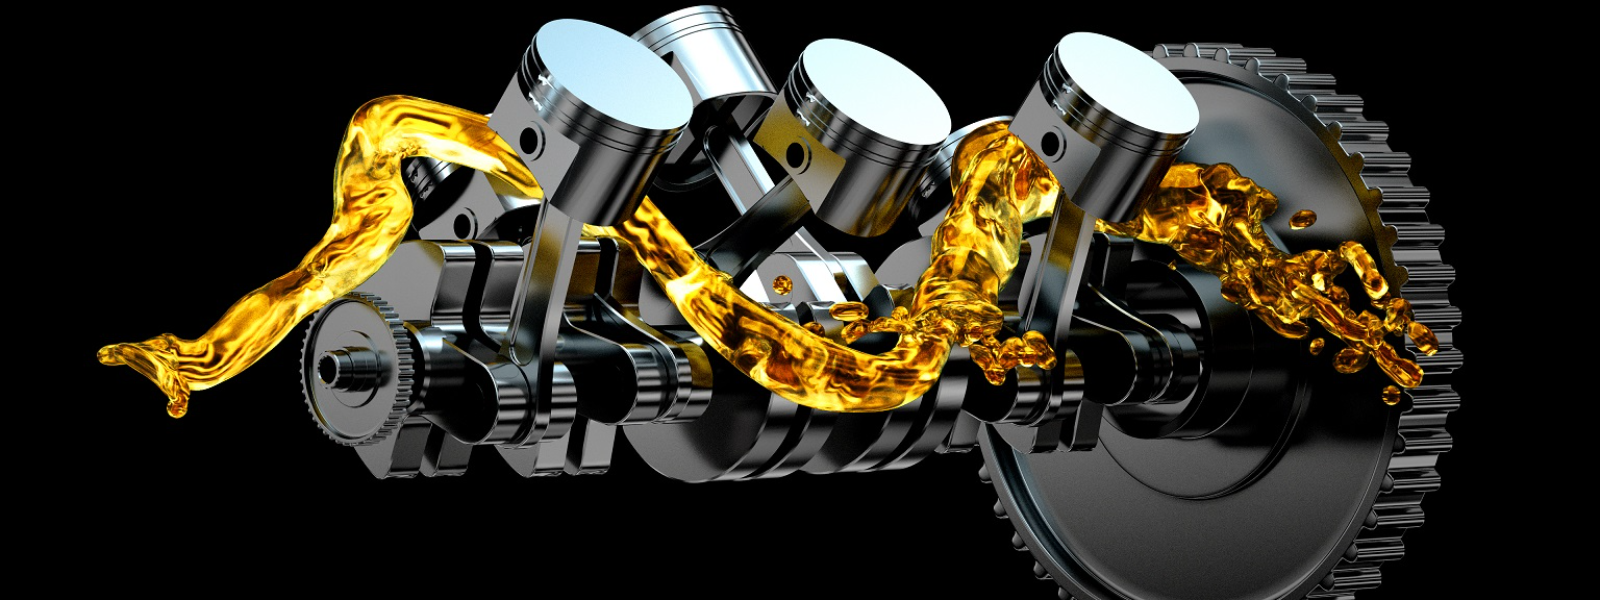 US MARINE DIESEL IMPORT LTD OÜ - X1R-i tootevalik hõlmab mootori lisandeid, kütuse- ja õlilisandeid, hooldusvahendeid,...